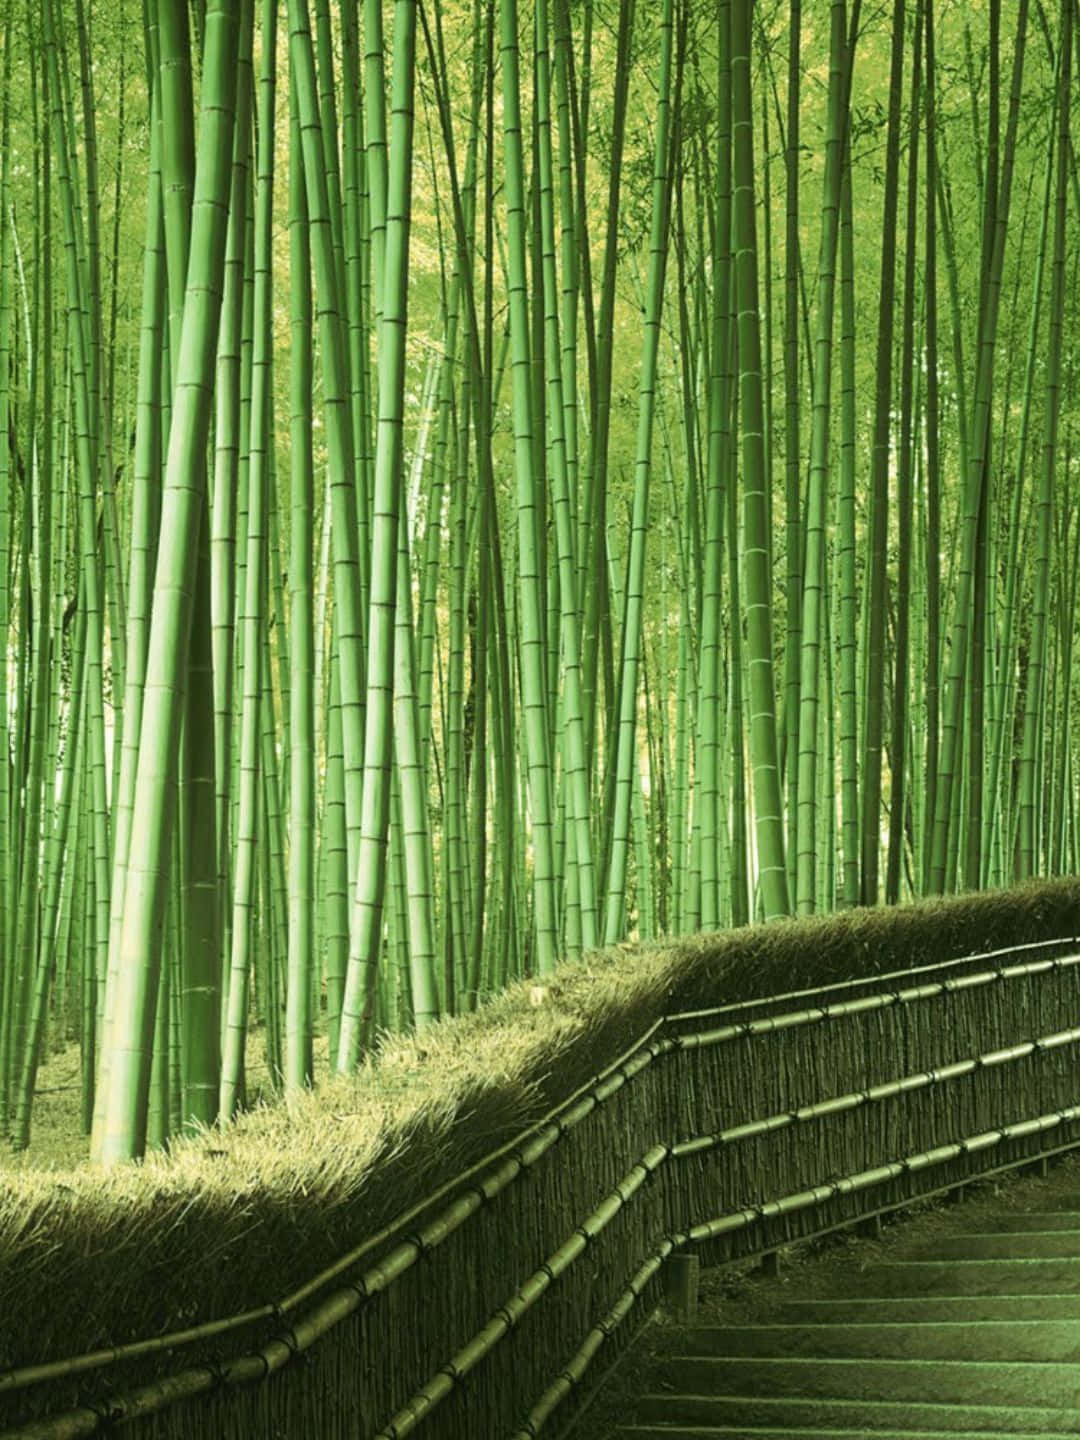 Fondode Pantalla De Bambú De 1440p Escalera